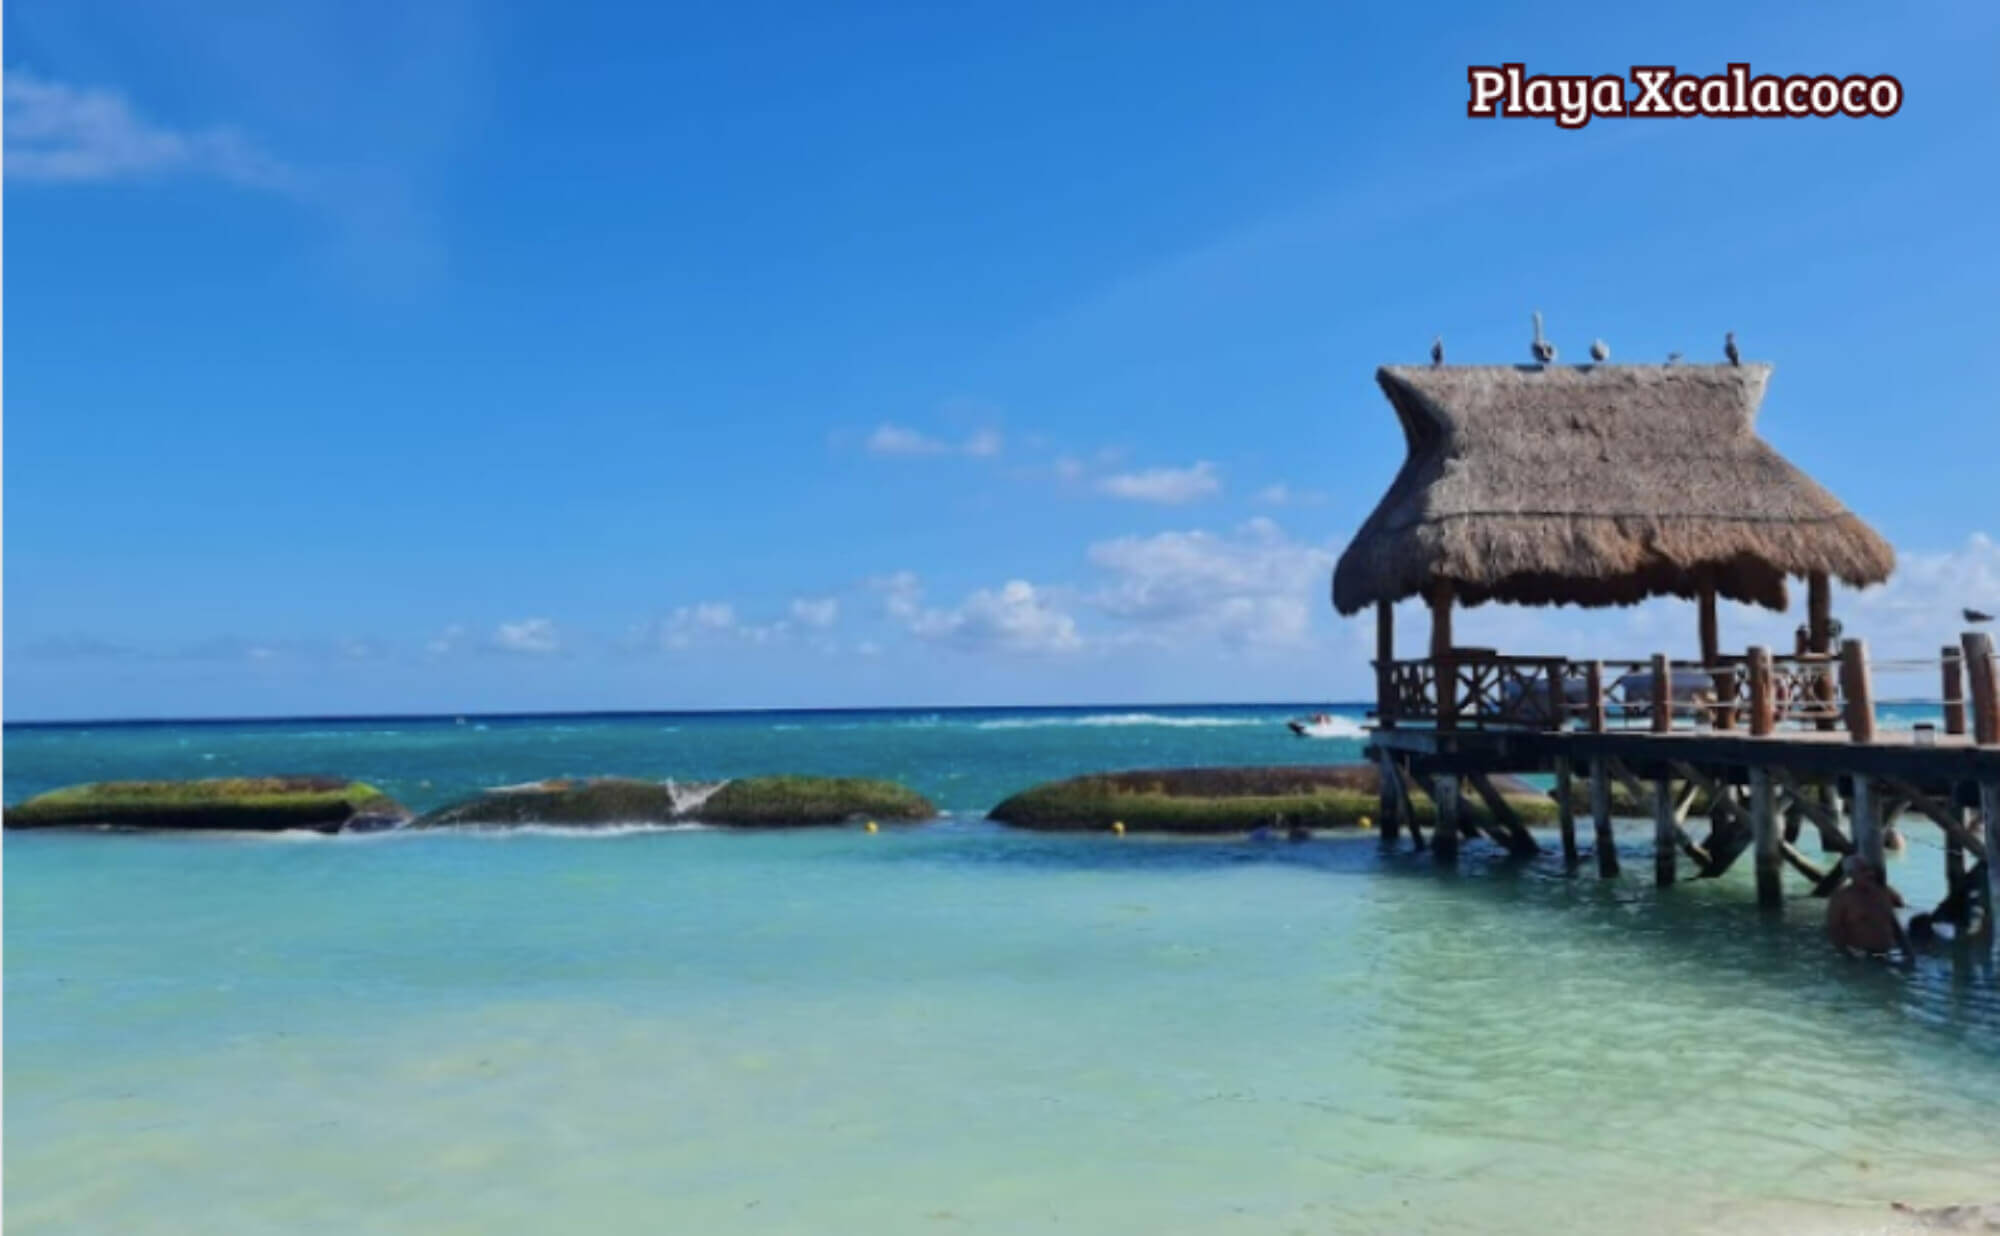 Departamento con mas de 15 amenidades pre-construccion en venta Playa del Carmen